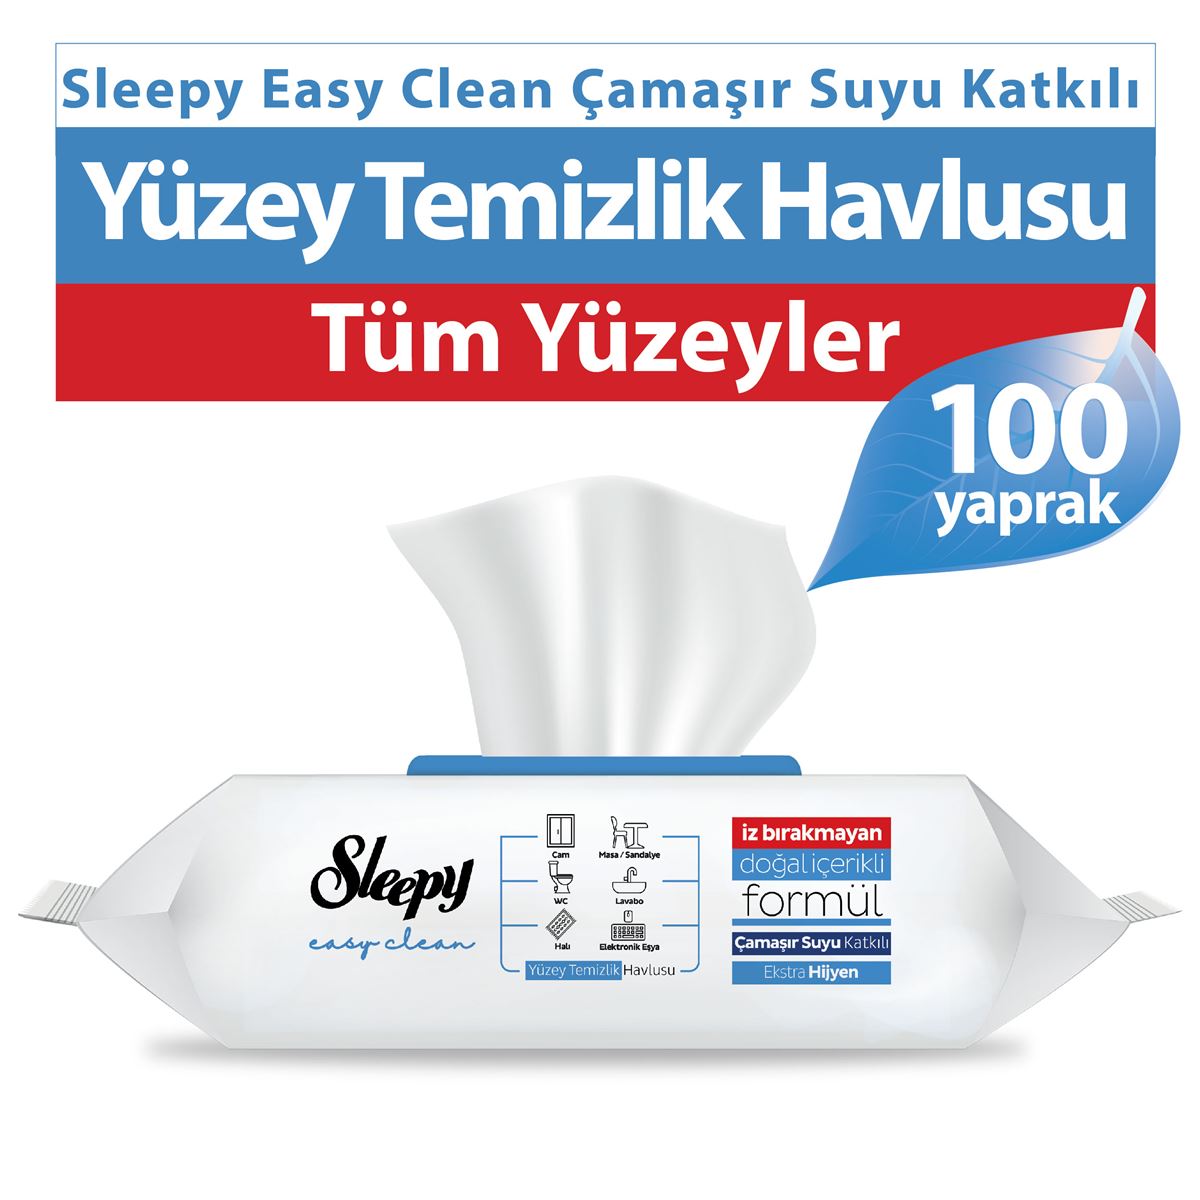 Sleepy Easy Clean Çamaşır Suyu Katkılı Yüzey Temizlik Havlusu 100 Yaprak 3 Paket